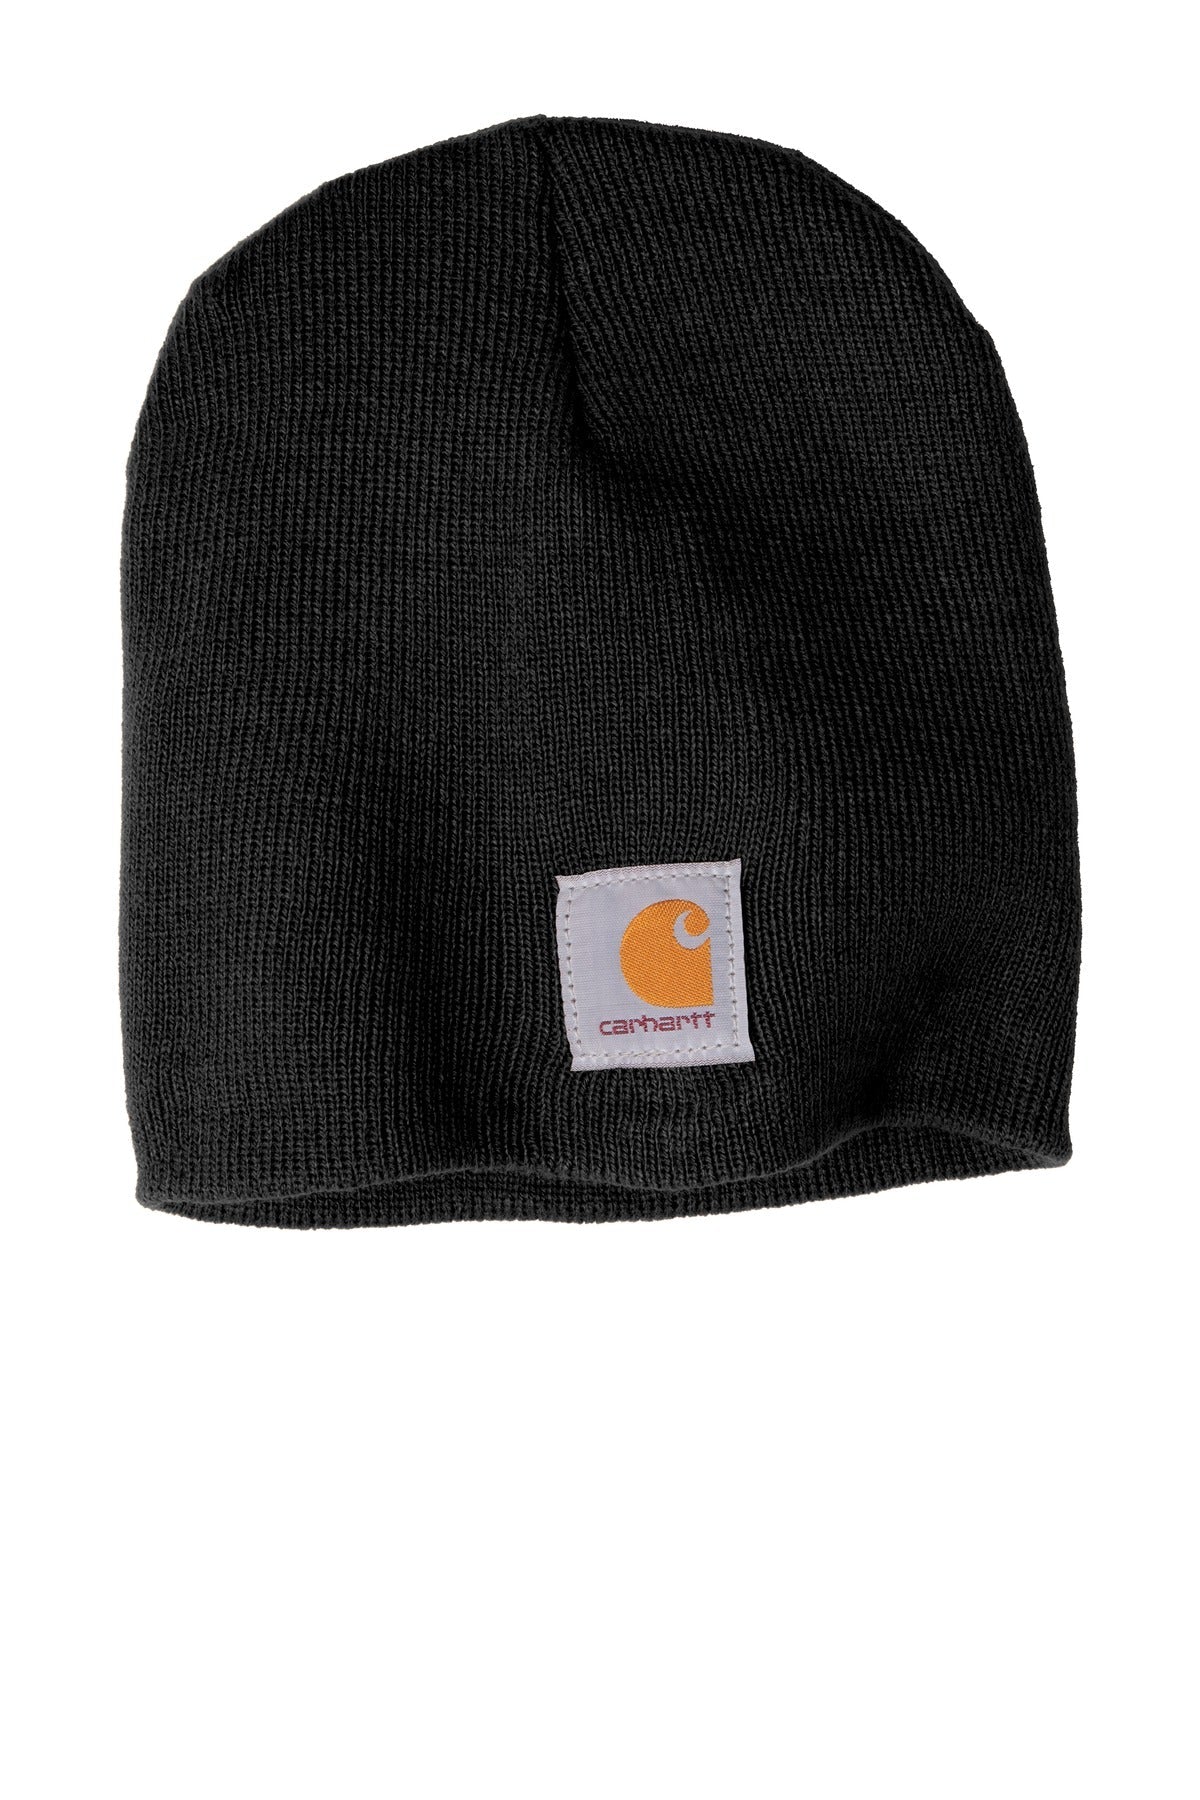 Carhartt ® Acrylic Knit Hat. CTA205 - DFW Impression